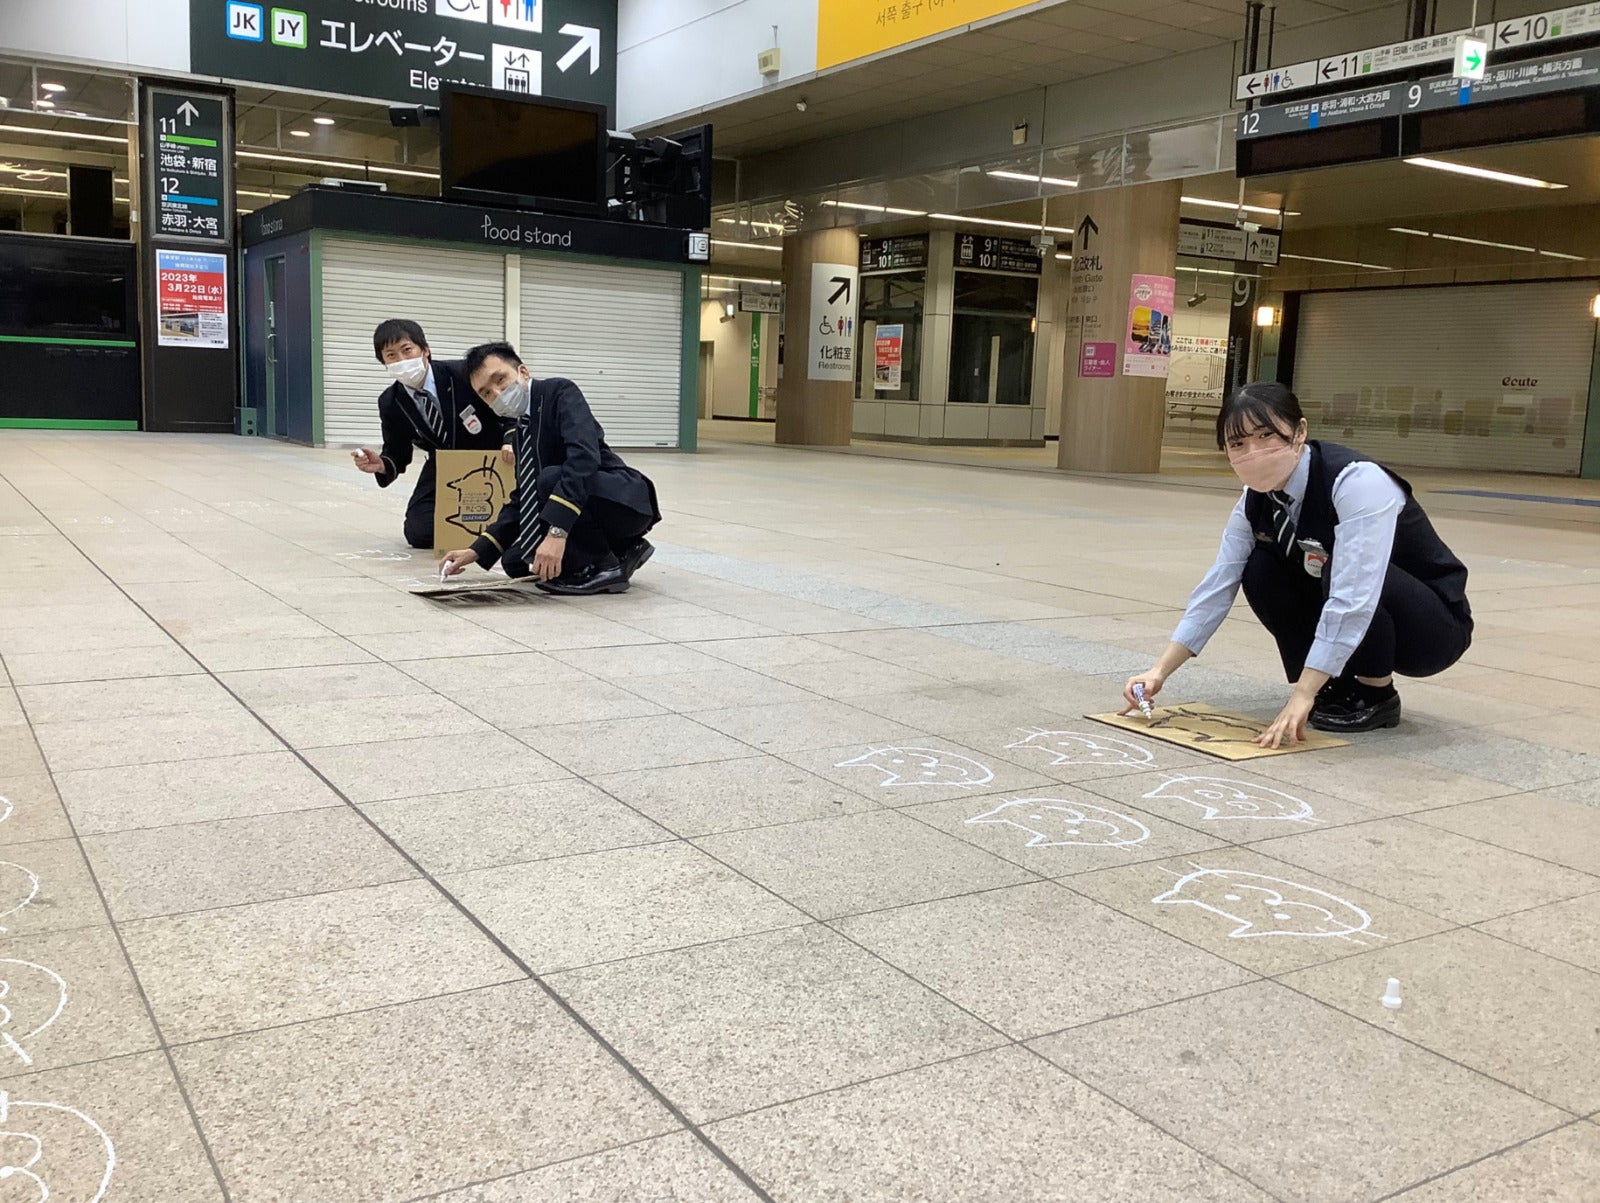 แมวเนียบโปริ วันแมวญี่ปุ่น สถานีรถไฟนิปโปริ Nippori โตเกียว